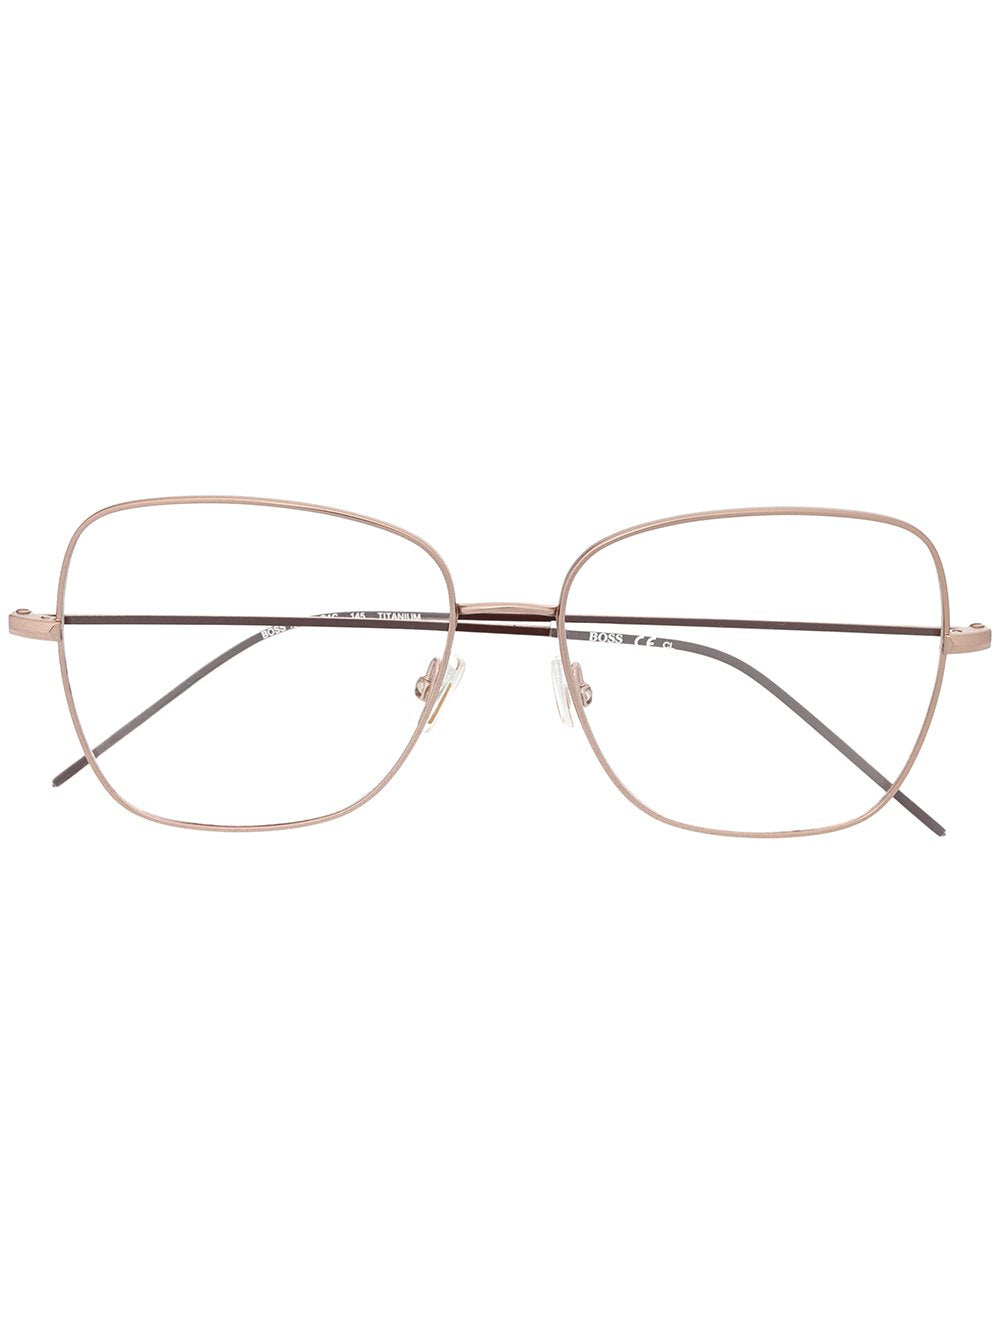 BOSS UNISEX Acetate / Metal Glasses & Frames 